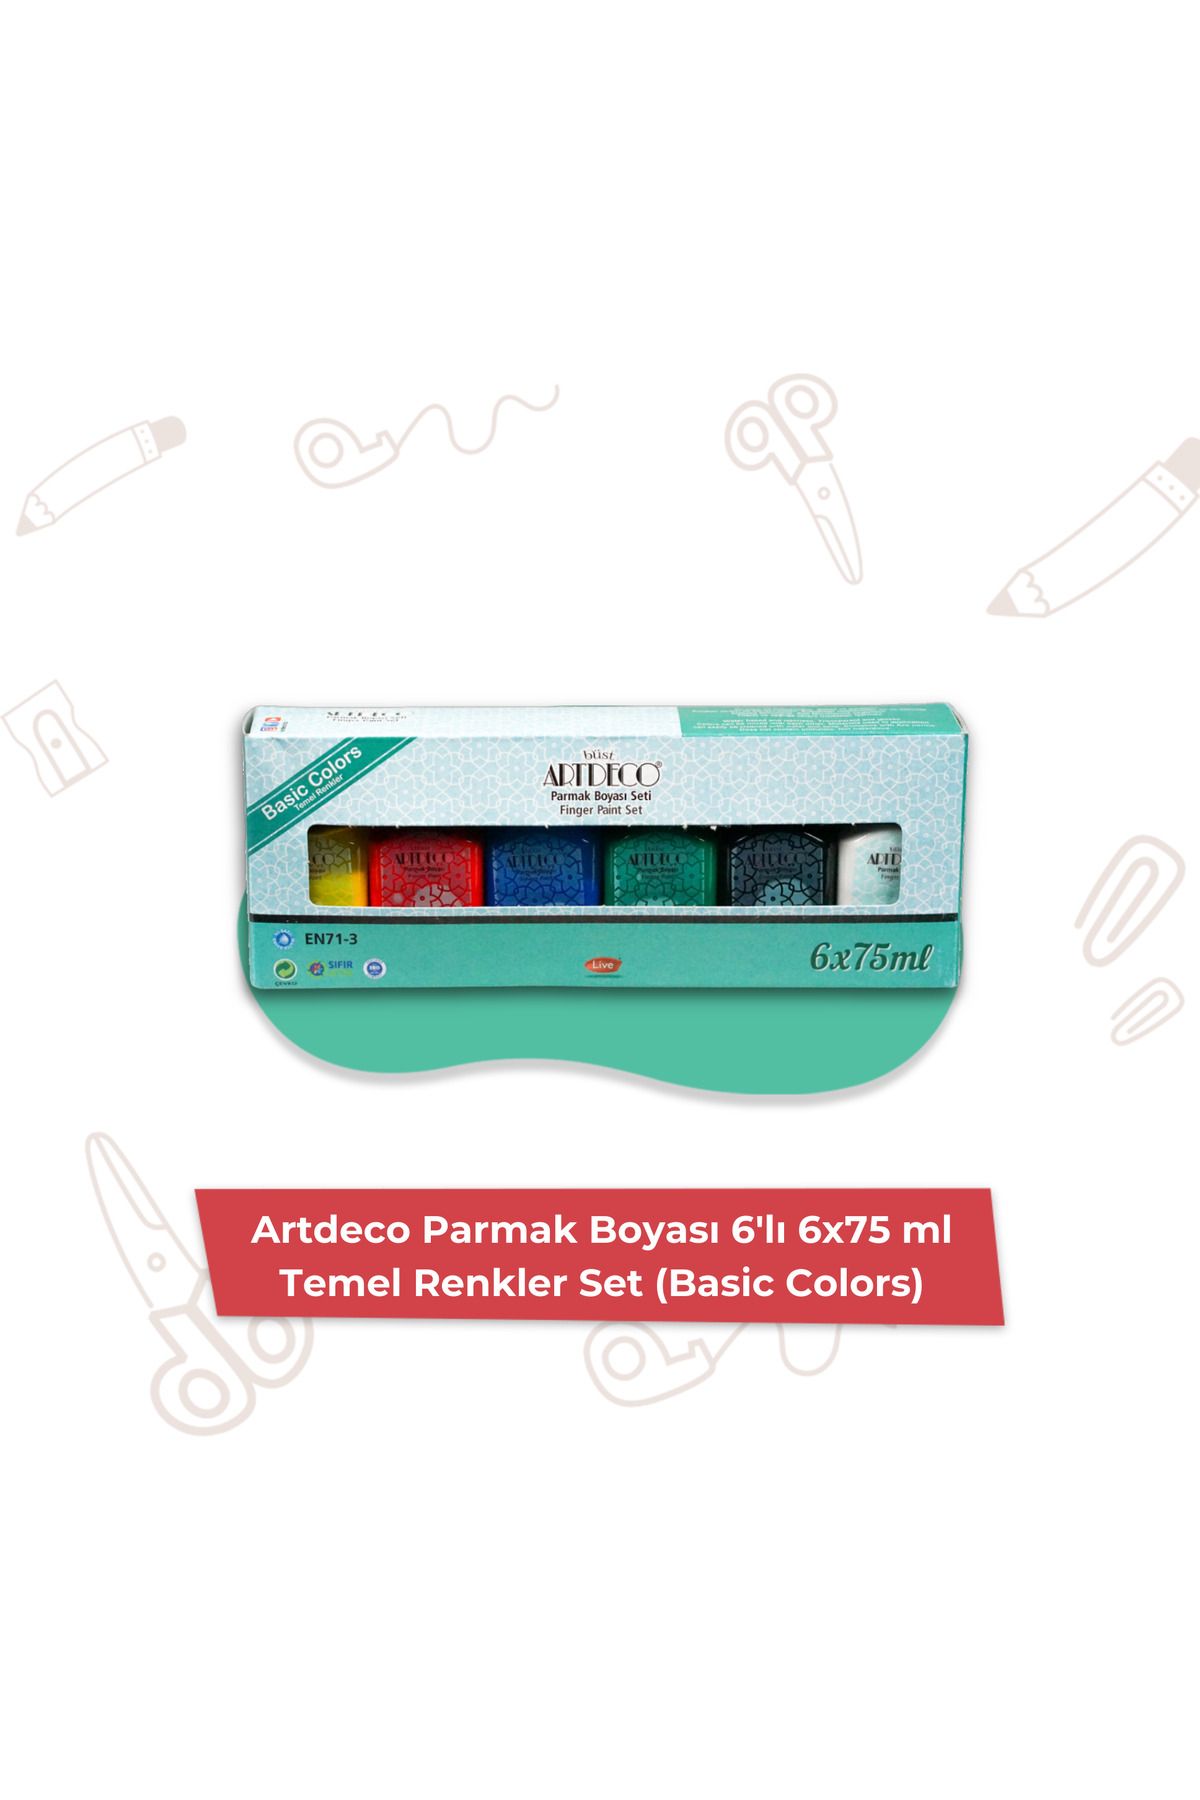 Artdeco Parmak Boyası 6'lı 6x75 ml Temel Renkler Set (Basic Colors)